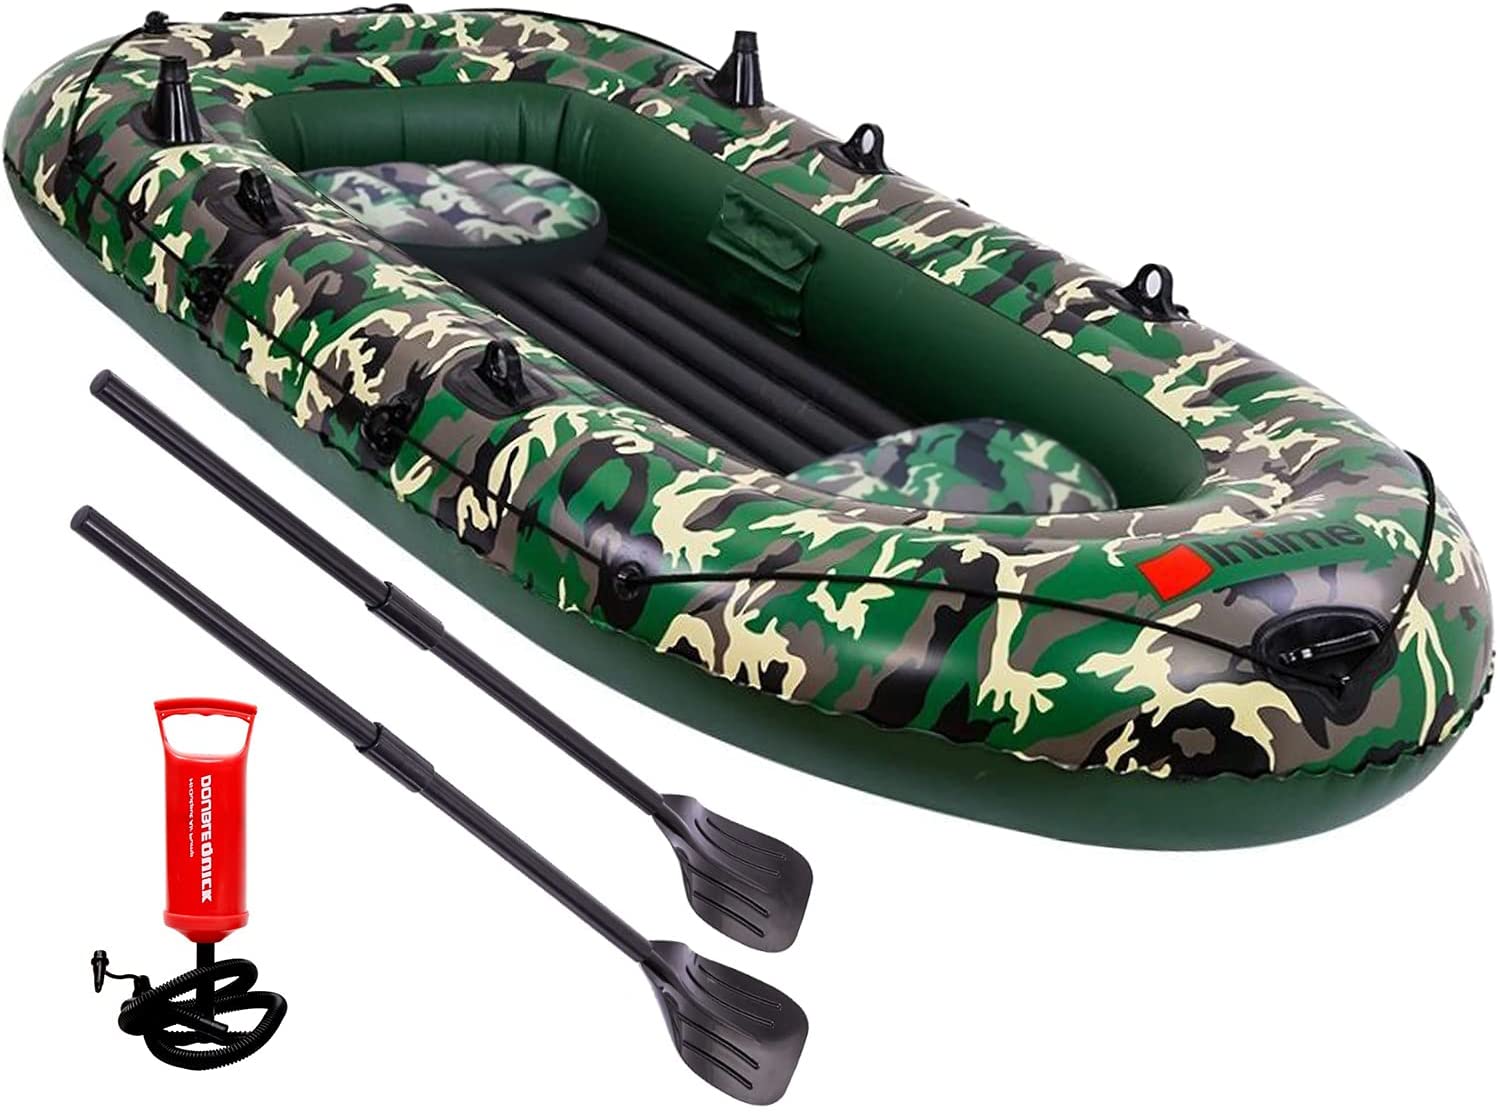 EPROSMIN 4 Person Inflatable Boat Canoe